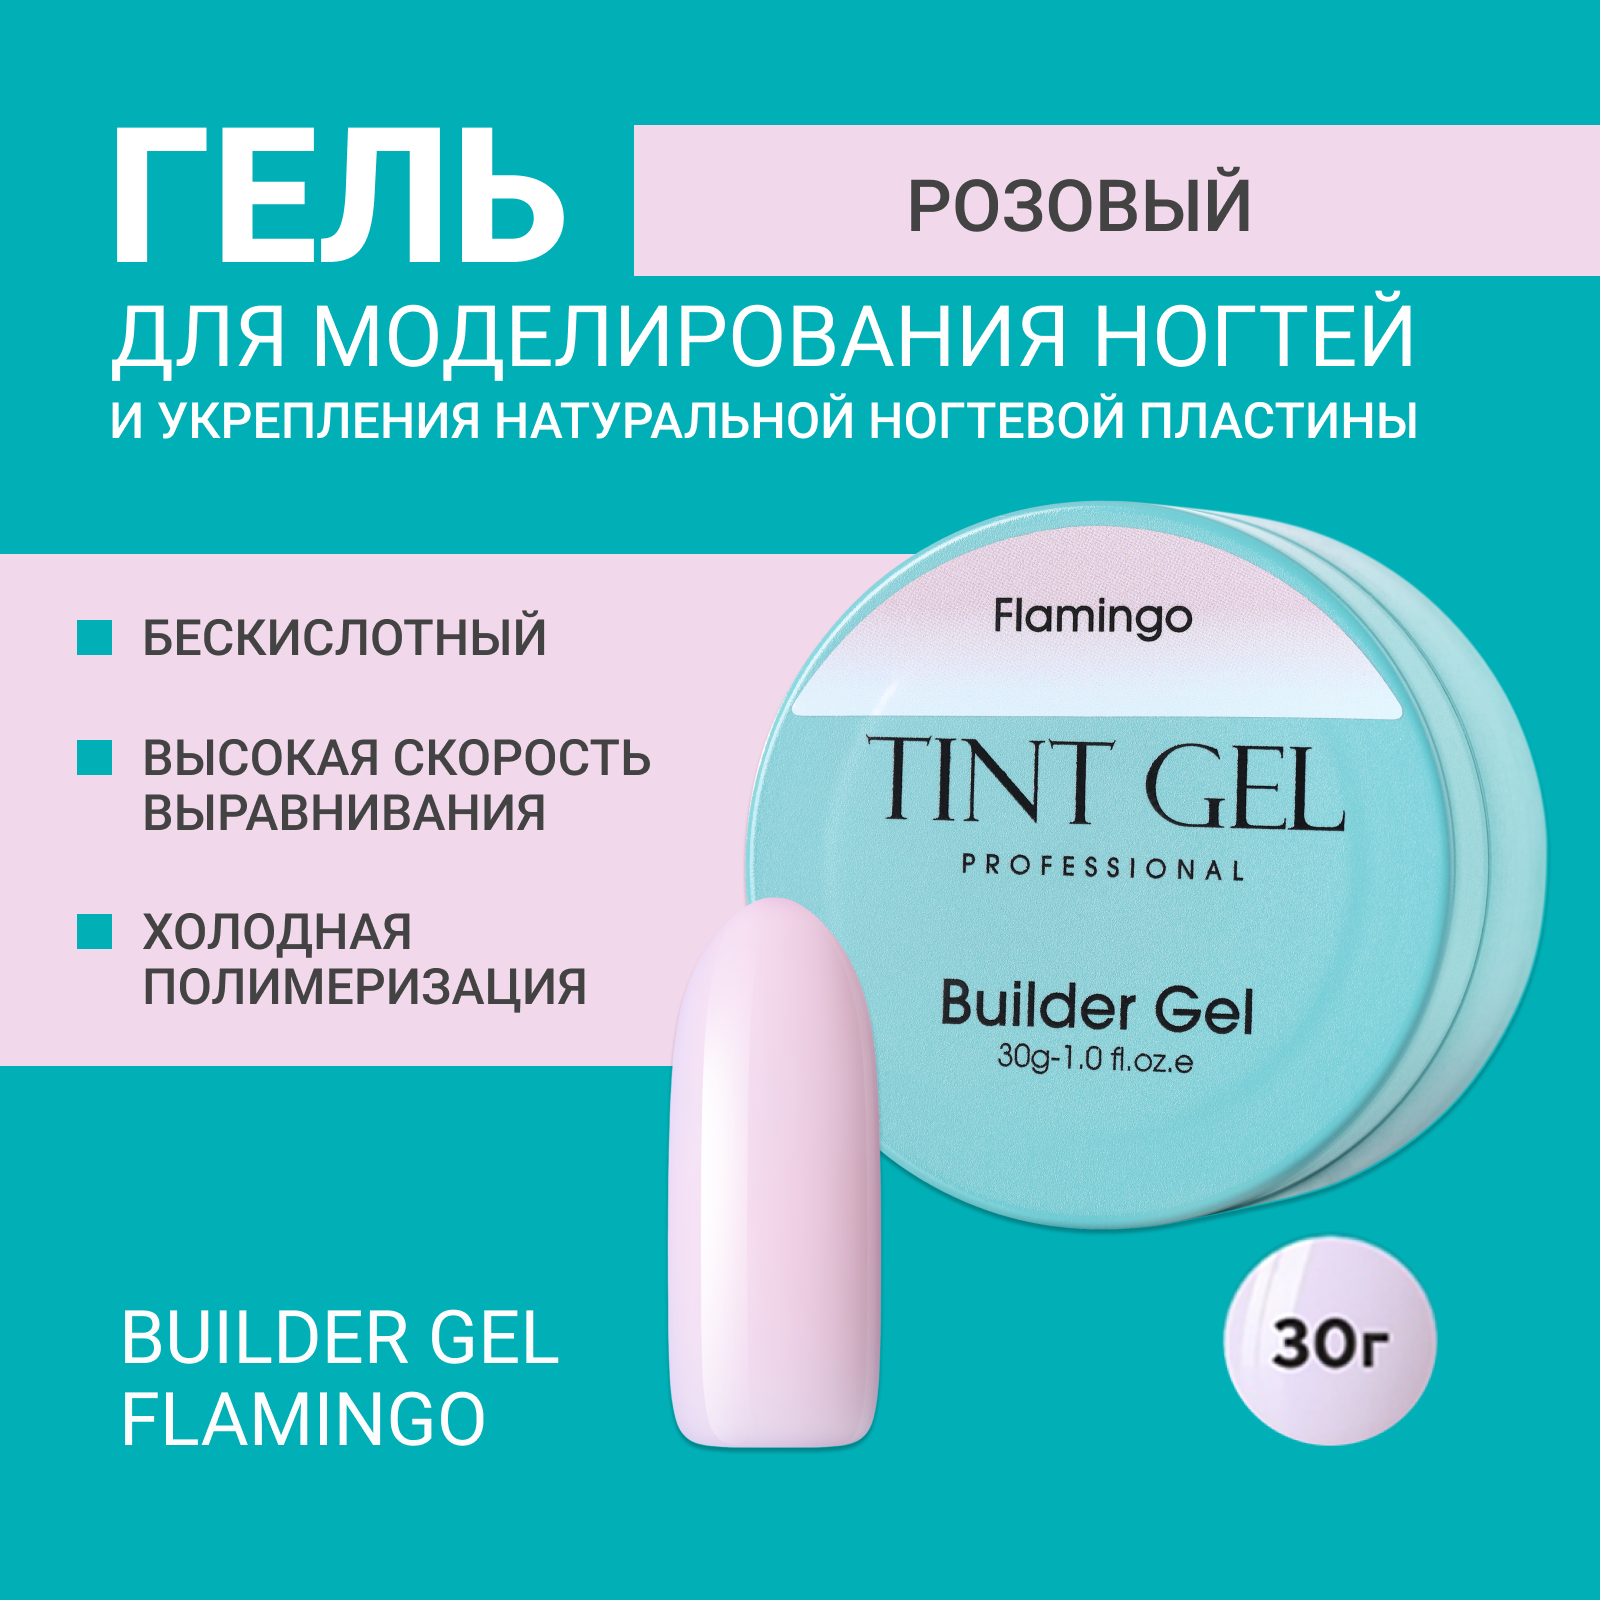 Гель Tint Gel Professional Builder gel Flamingo 30 г музыкальная эстетика м п мусоргского